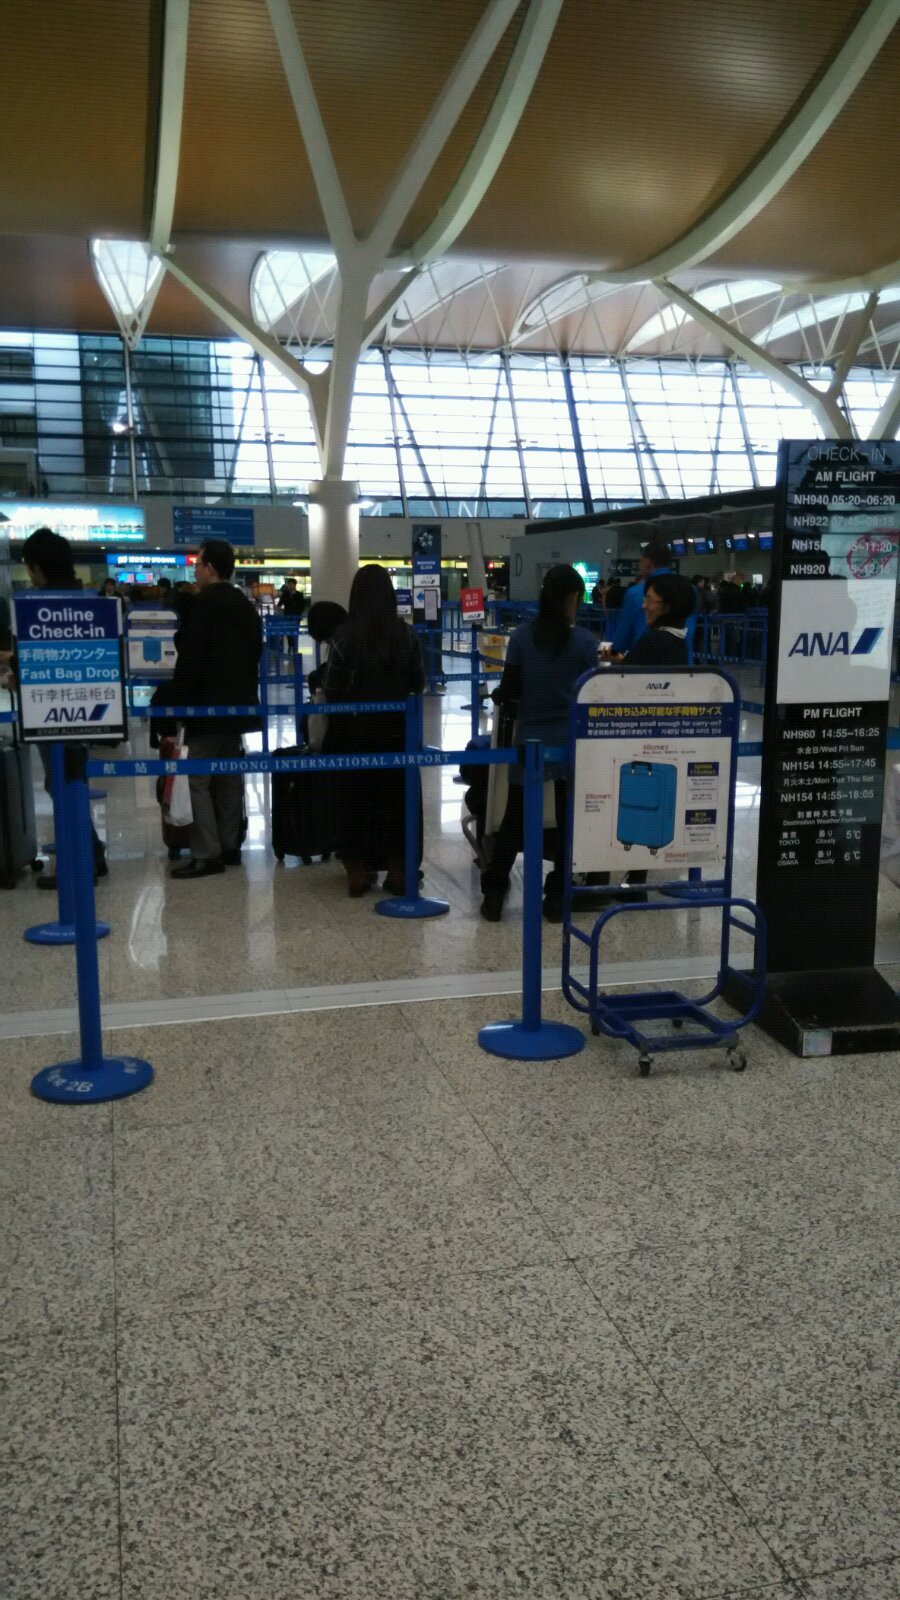 于二点三十分抵达浦东国际机场,将搭乘全日空nh0514航班于北京时间18